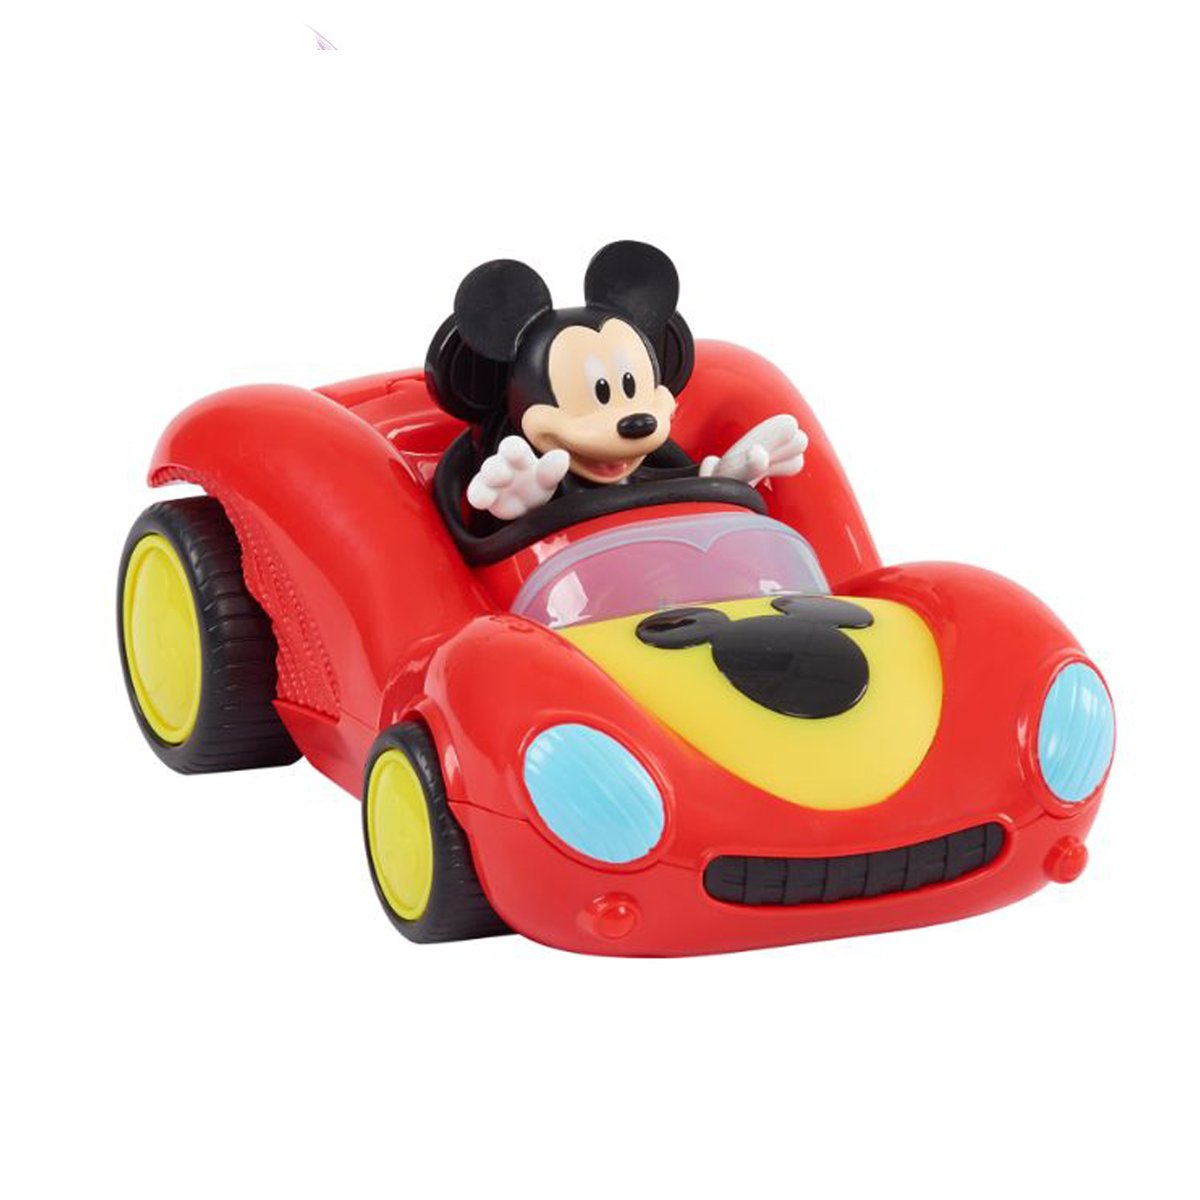 Figurina Mickey Mouse cu masina de curse, 38757